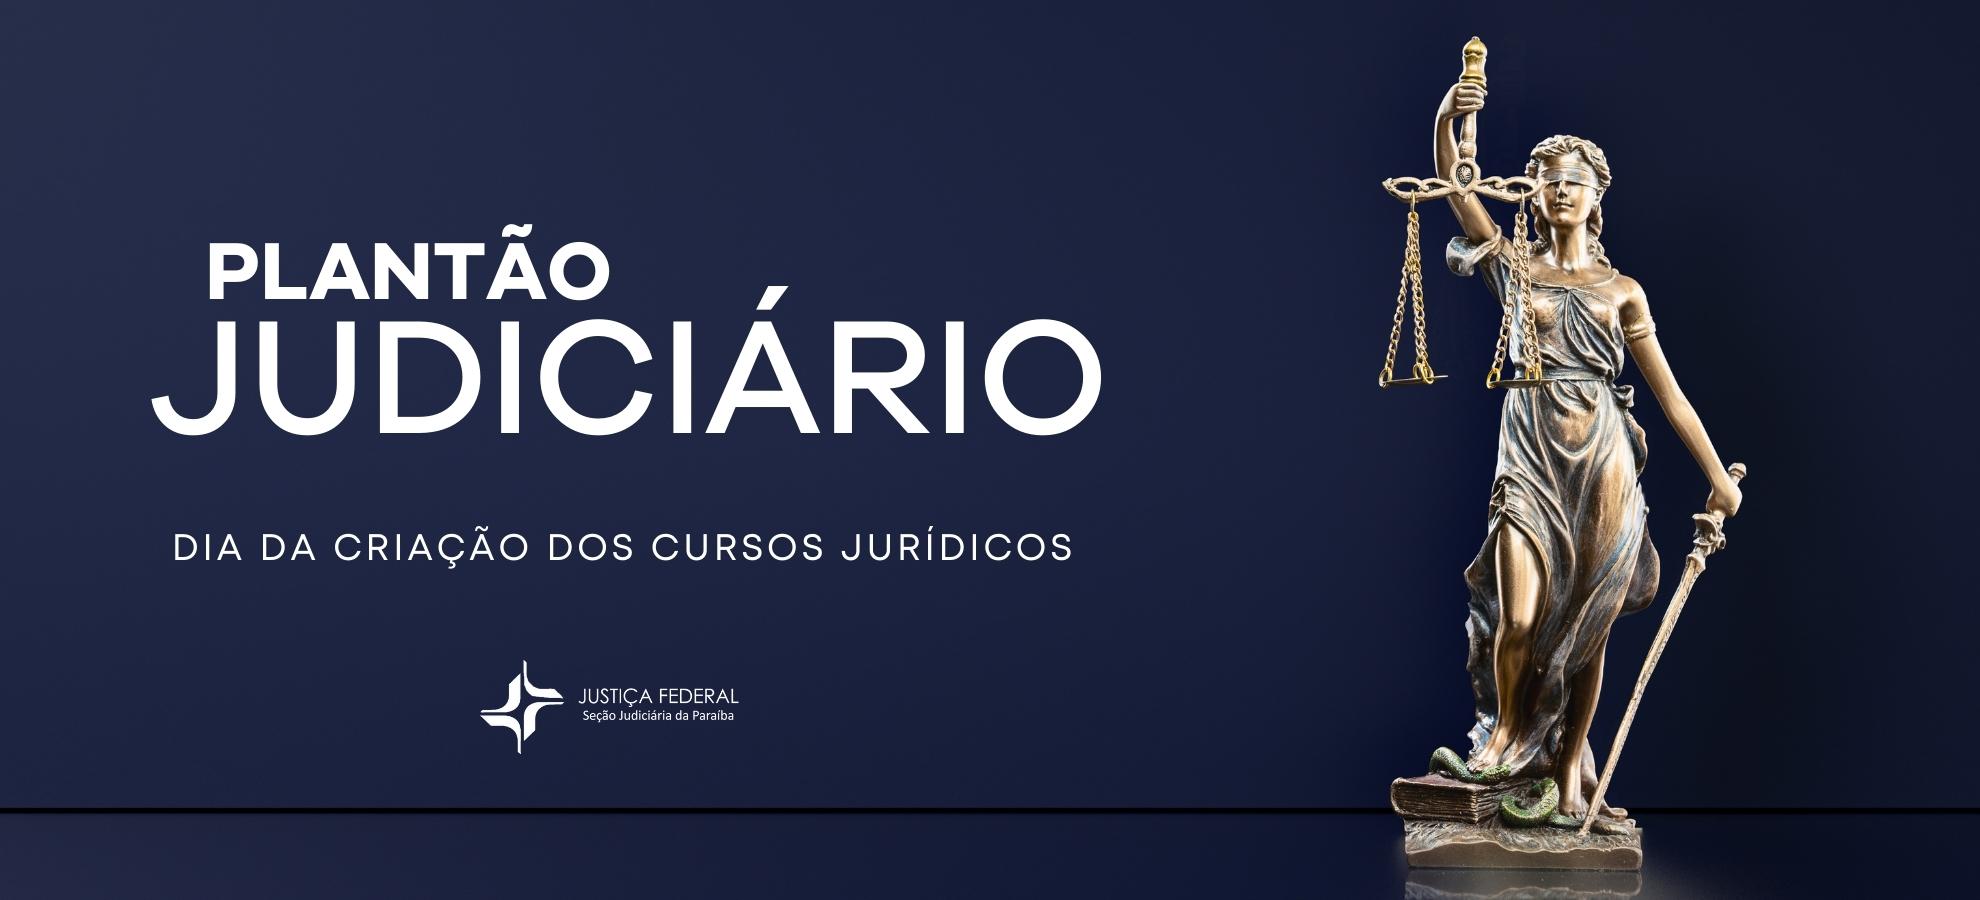 Acesse a notícia completa: Justiça Federal na Paraíba altera funcionamento nos dias 11 e 12/08